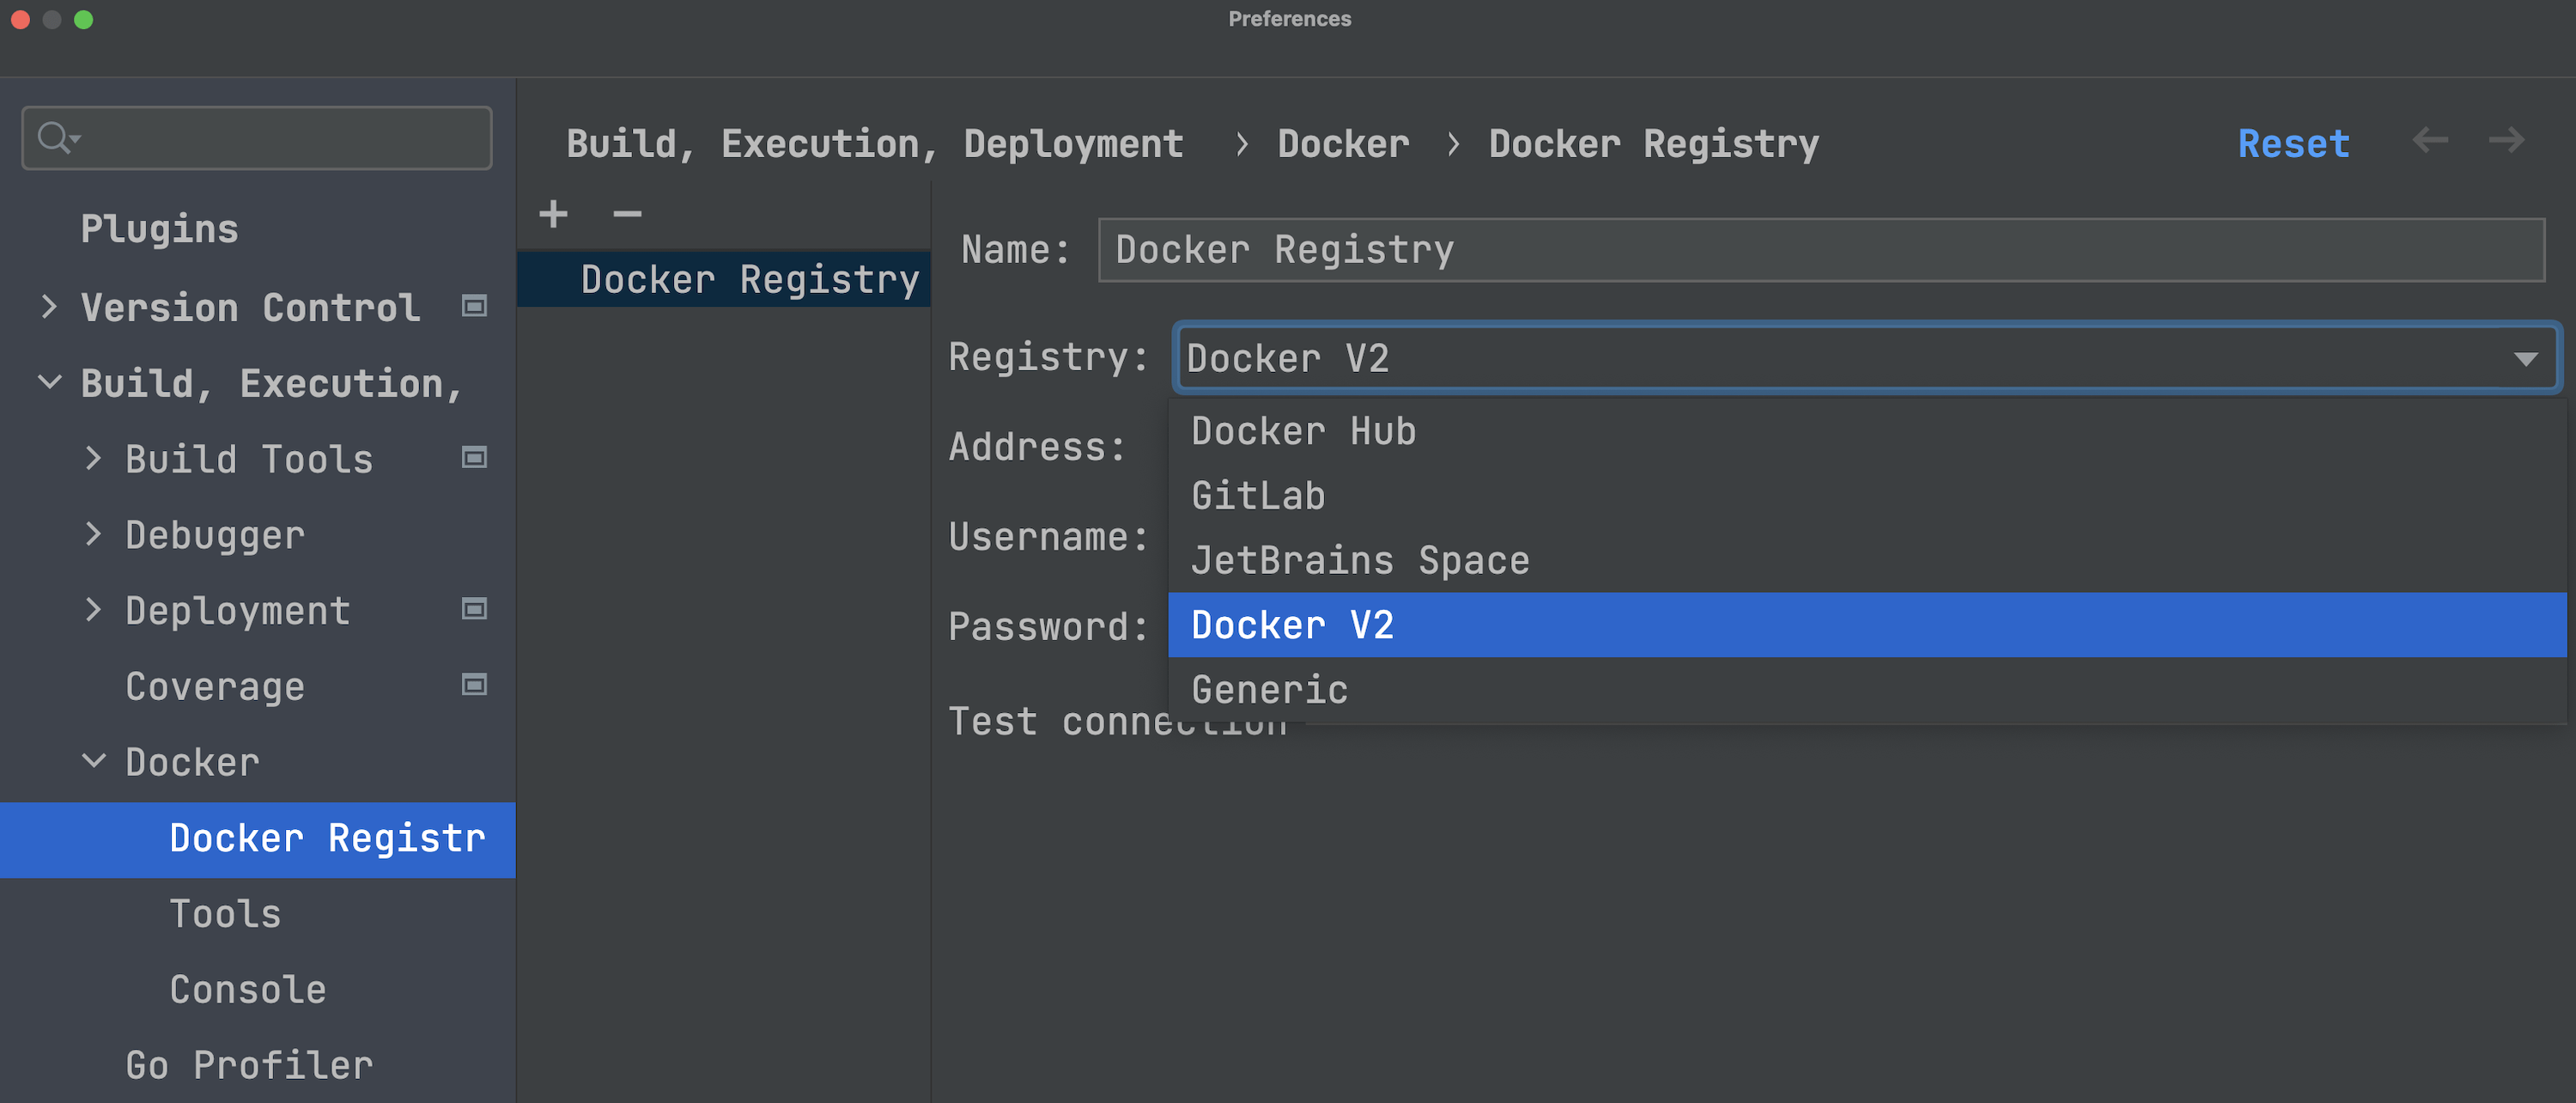 Docker V2 可在 Docker Registry 设置中访问。